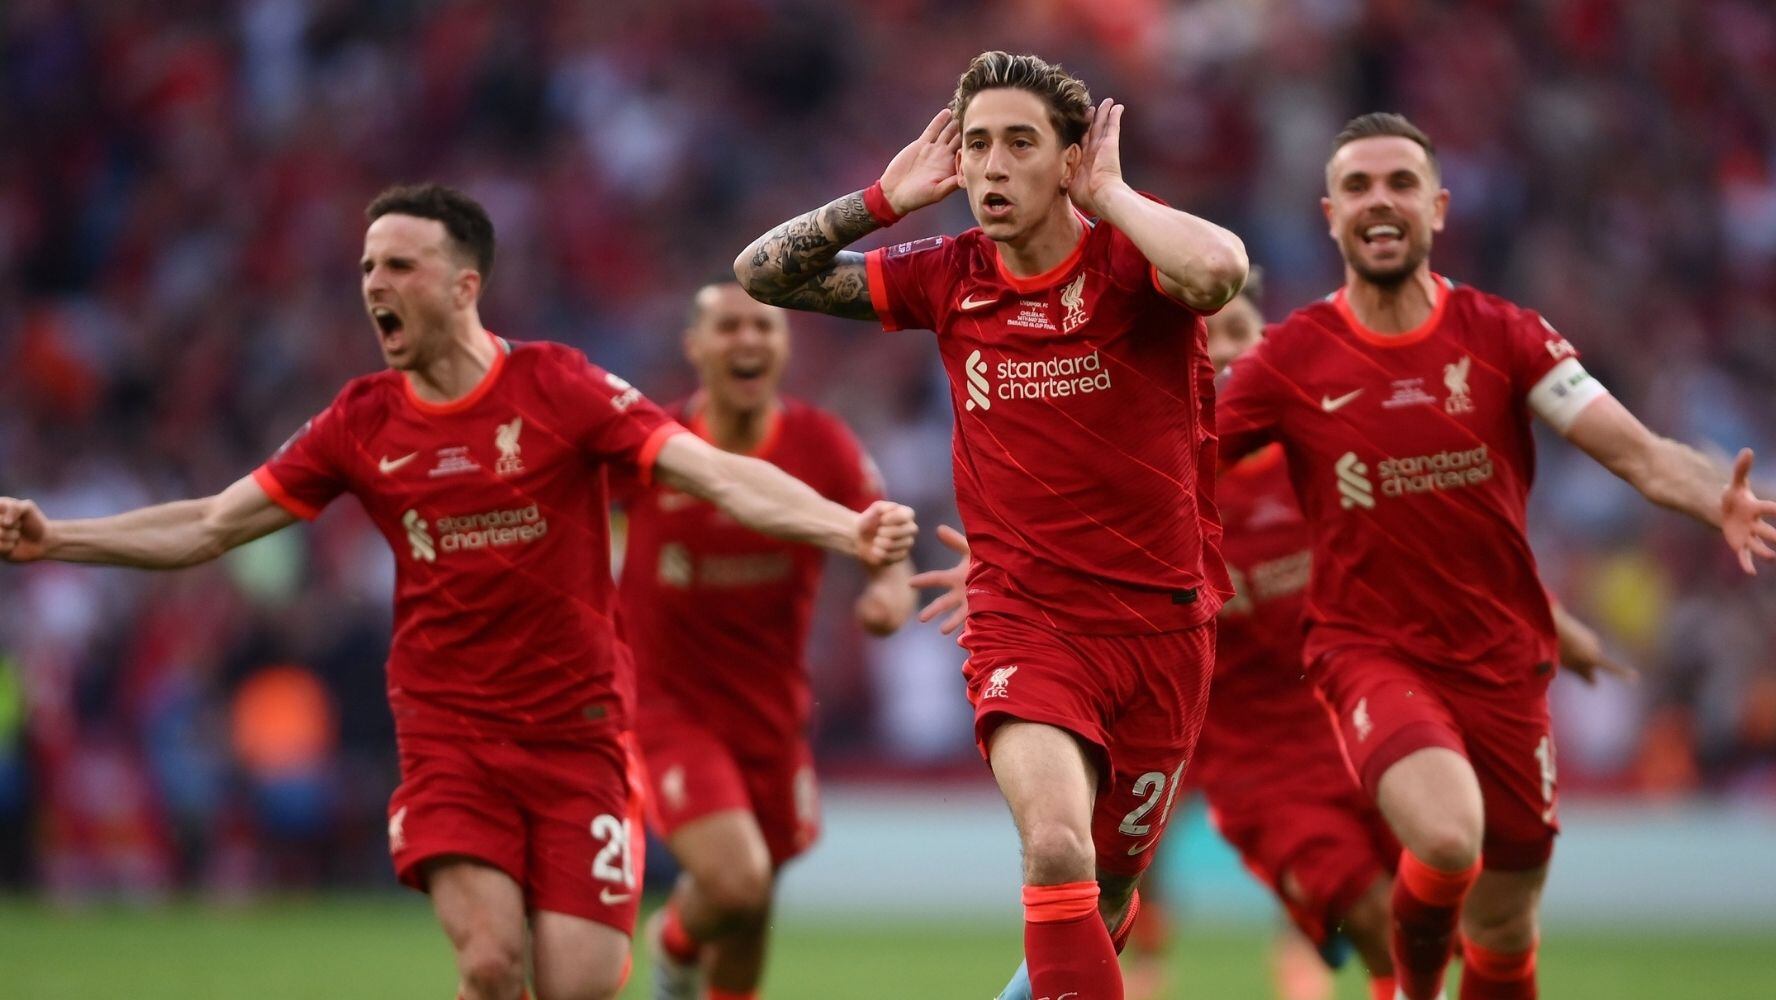 FA Cup: Liverpool es campeón tras derrotar al Chelsea 6-5 en penales